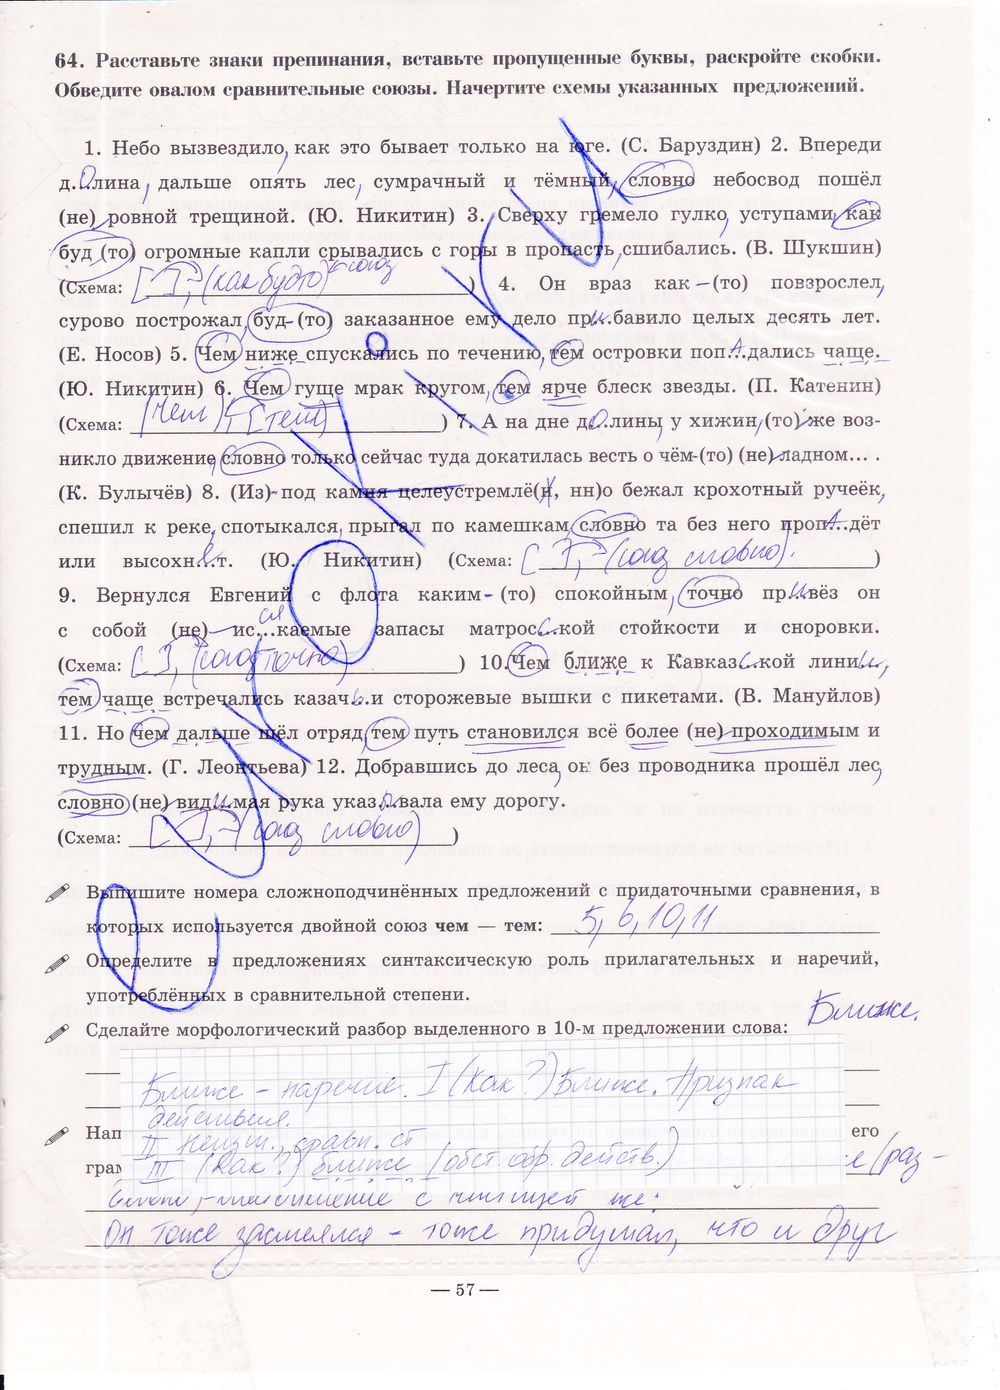 ГДЗ Русский язык 9 класс - стр. 57